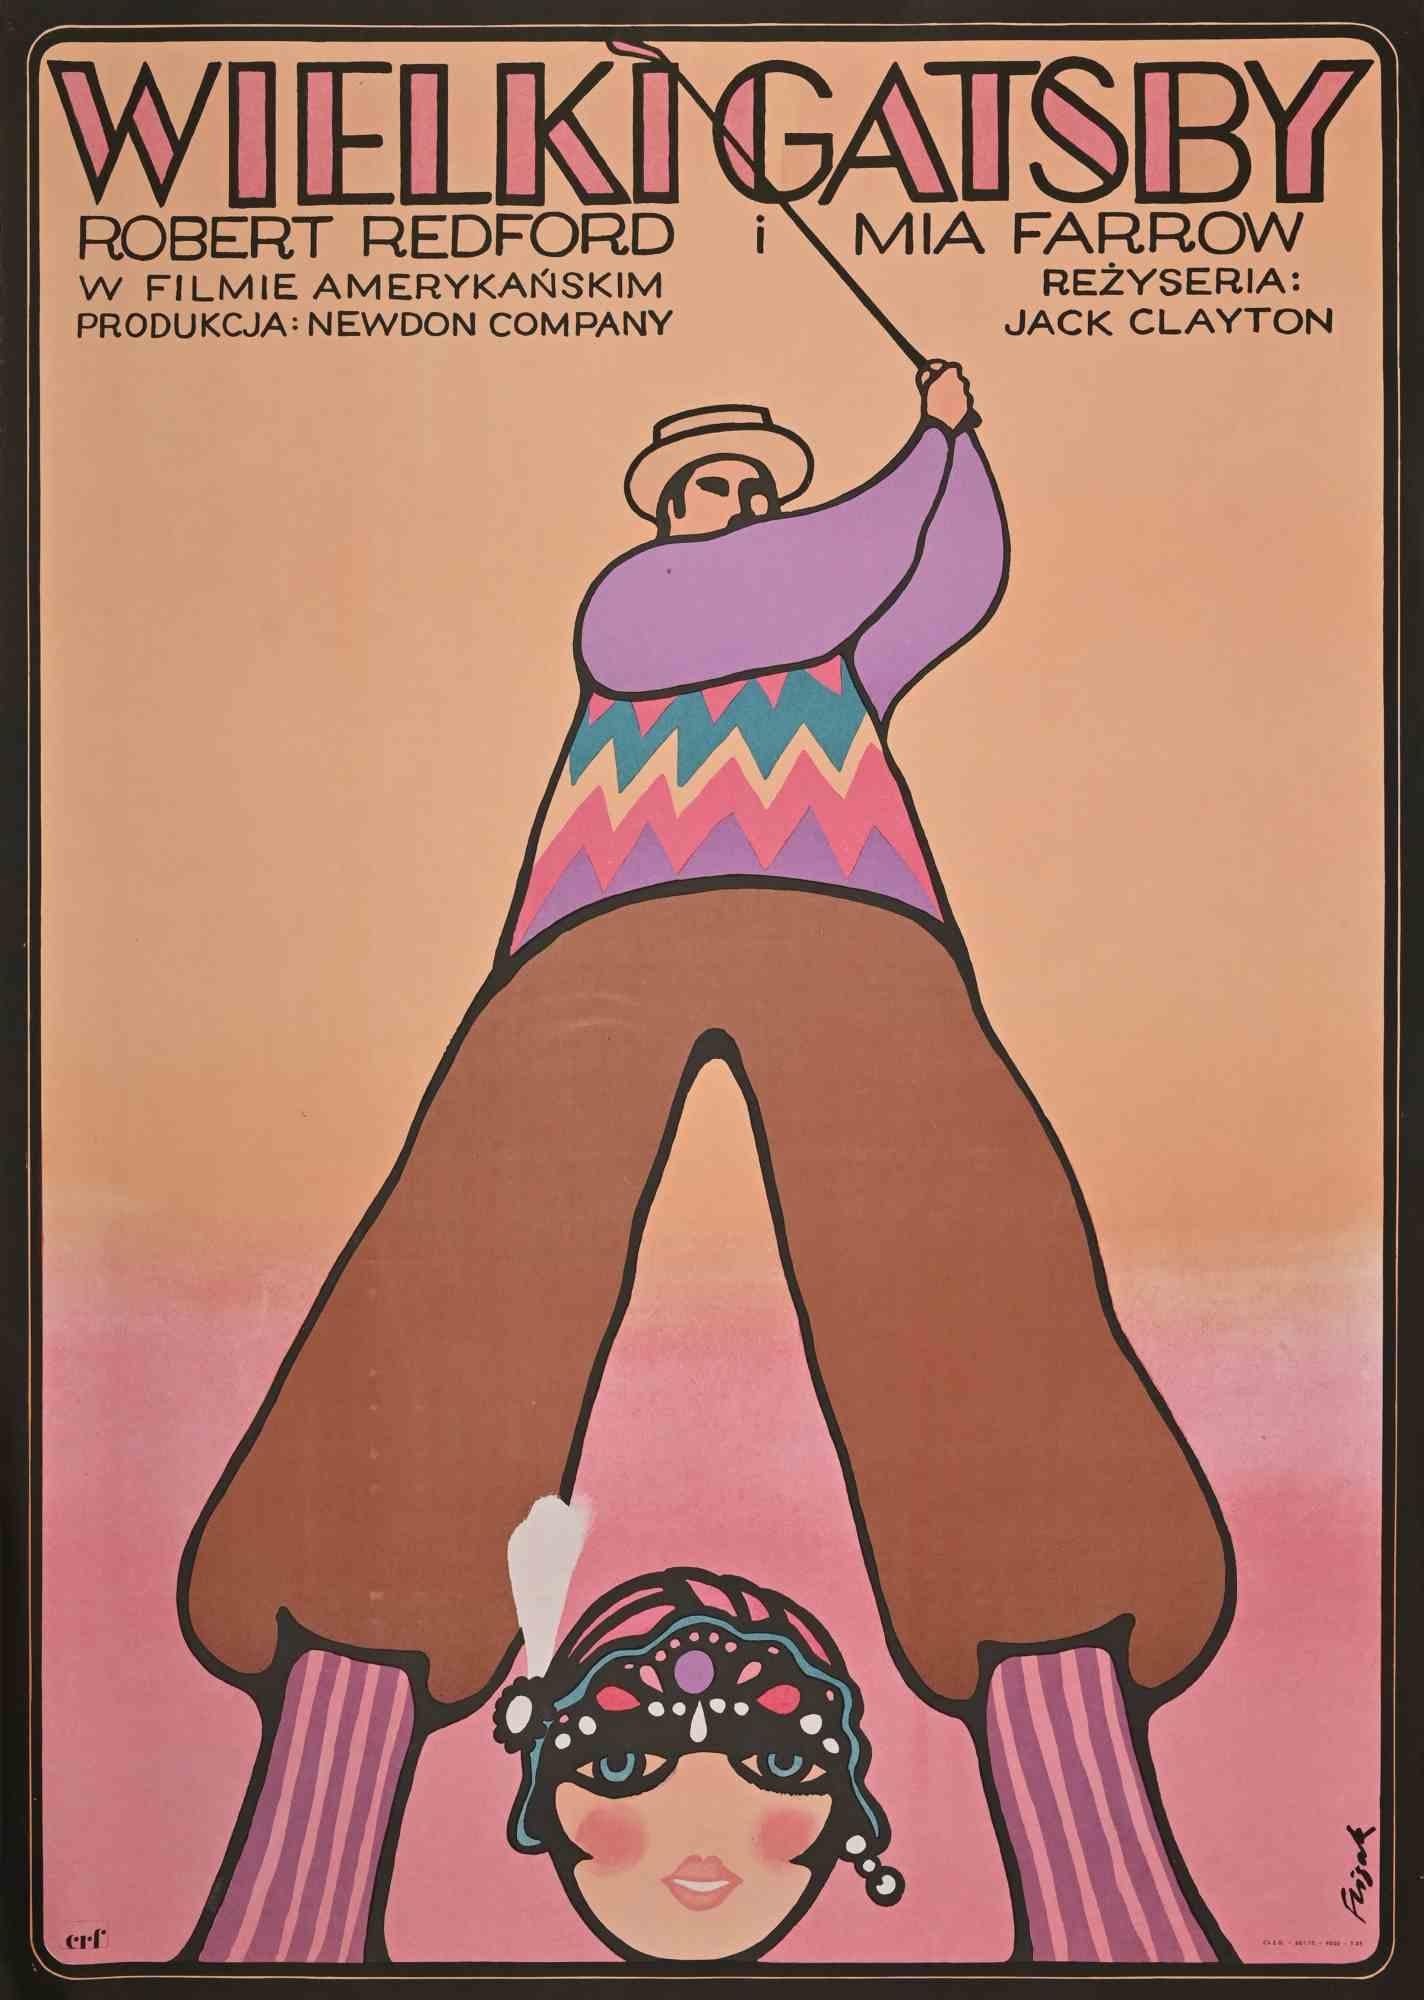 Manifesto Cinema - The Great Gatsby ist ein Vintage-Poster auf Papier realisiert von  Jerzy Flisak (Varsavia, 1930 - 2008)  im Jahr 1975. 

Farbige Original-Lithographie. Handsigniert.

Guter Zustand mit leichten Faltungen

Jerzy Flisak  (Varsavia,